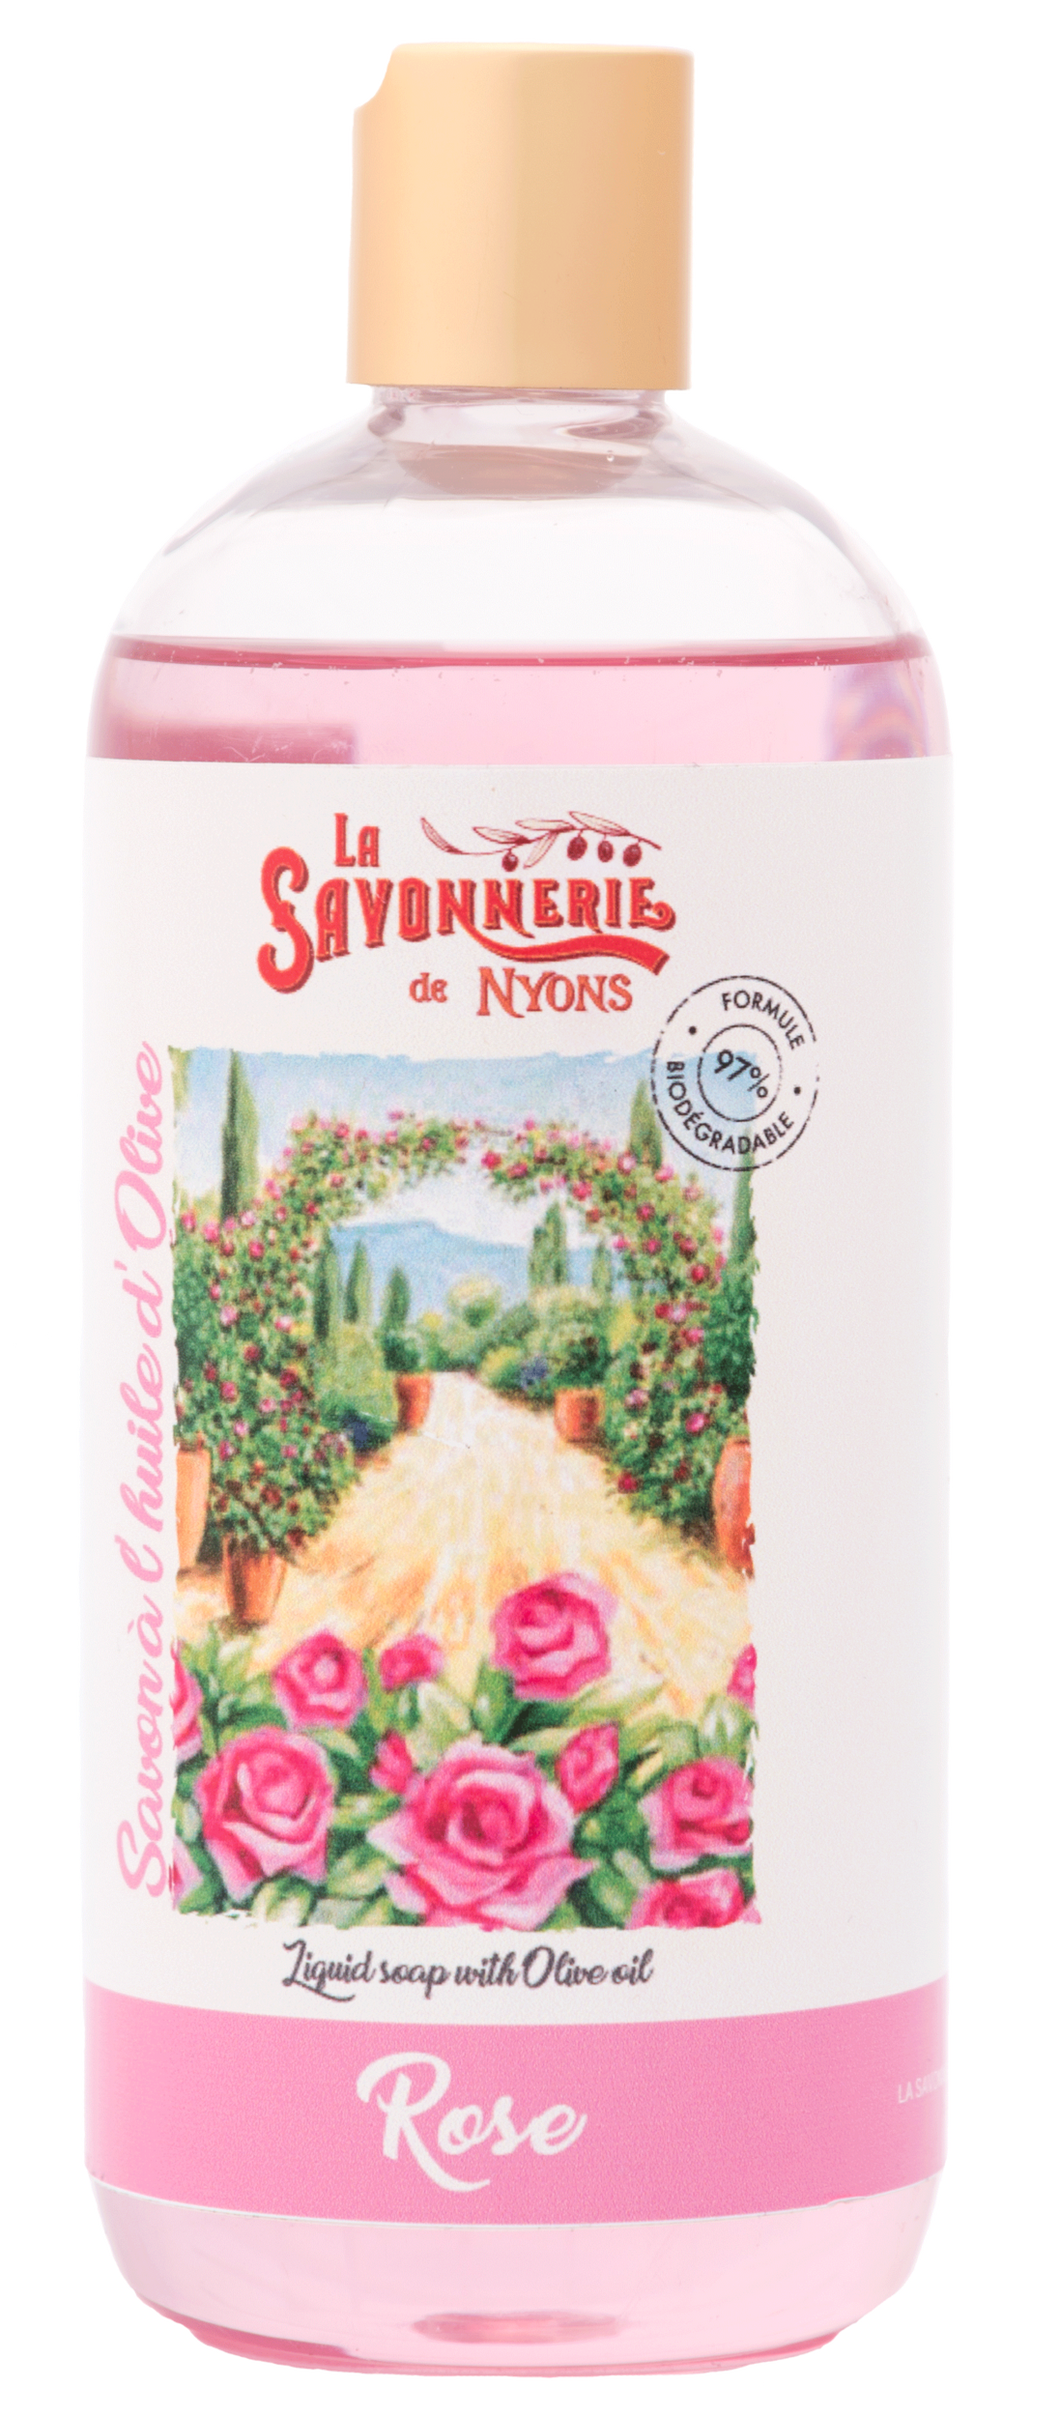 La Savonnerie de Nyons: Rose Liquid Soap Refill, 1L